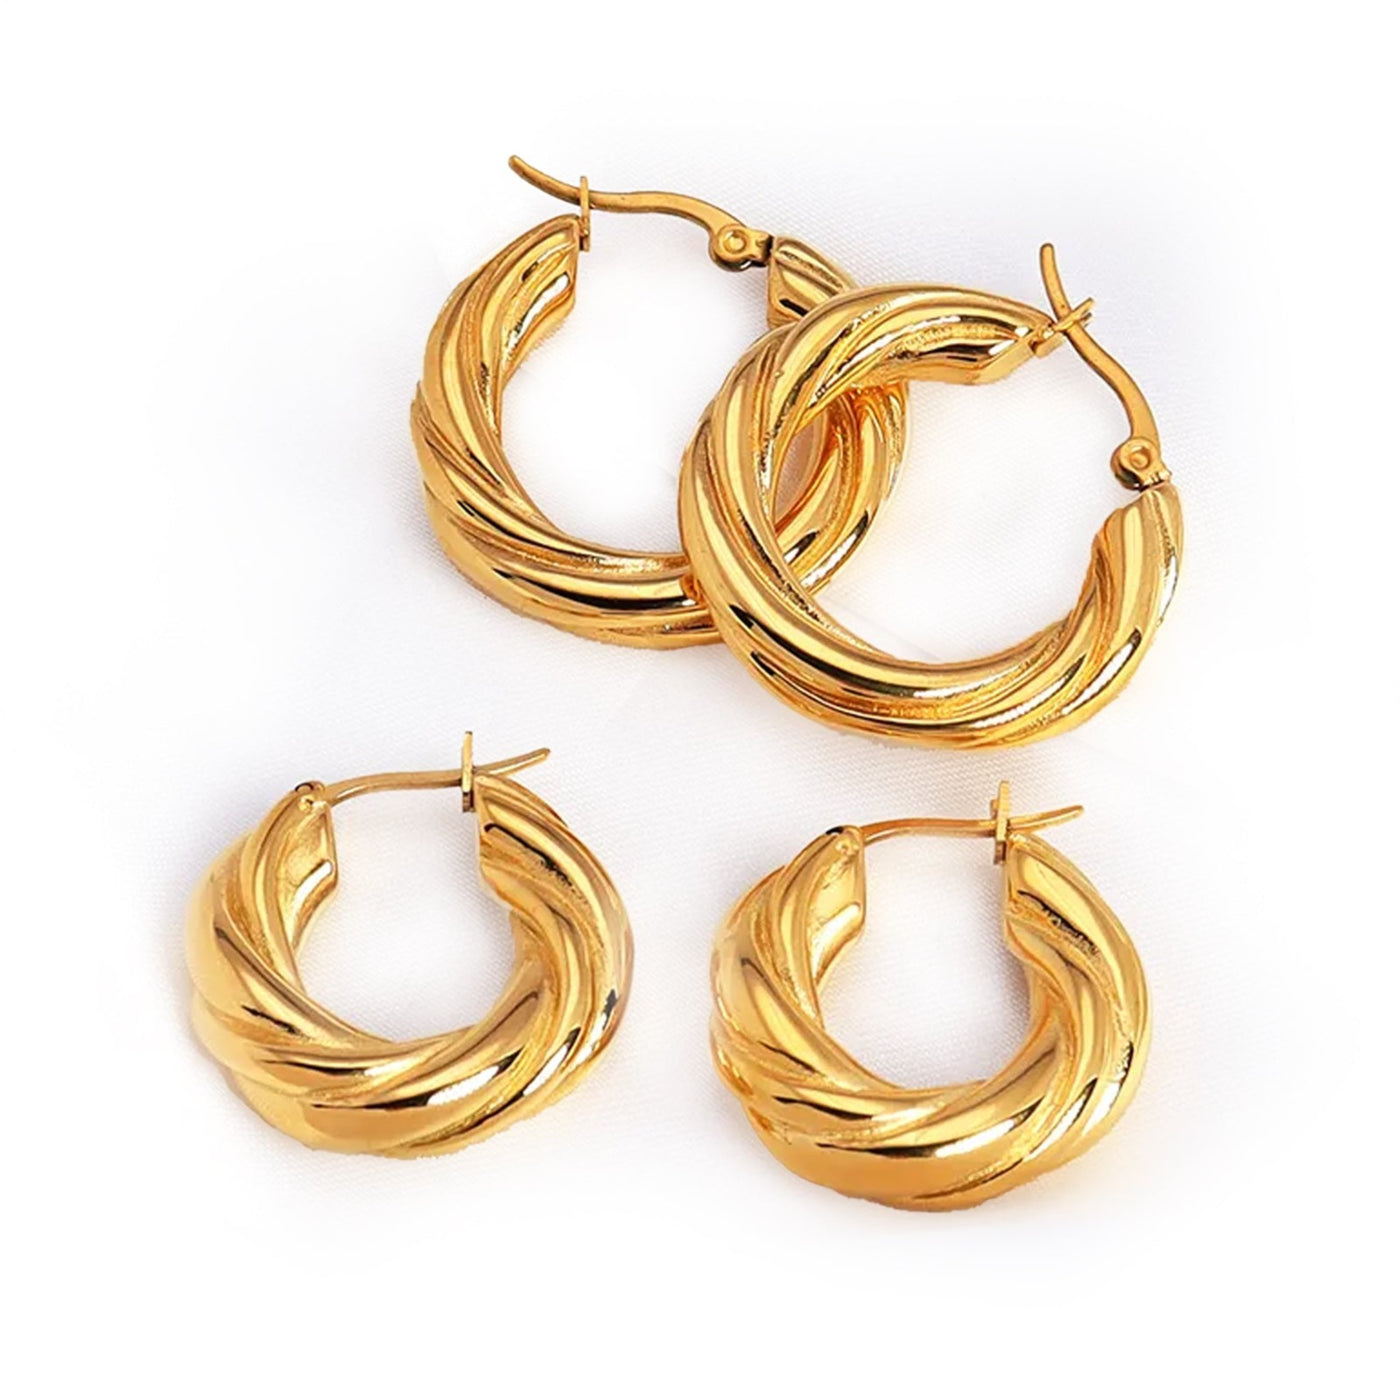 Shop On-line Twisted Hoop Earrings